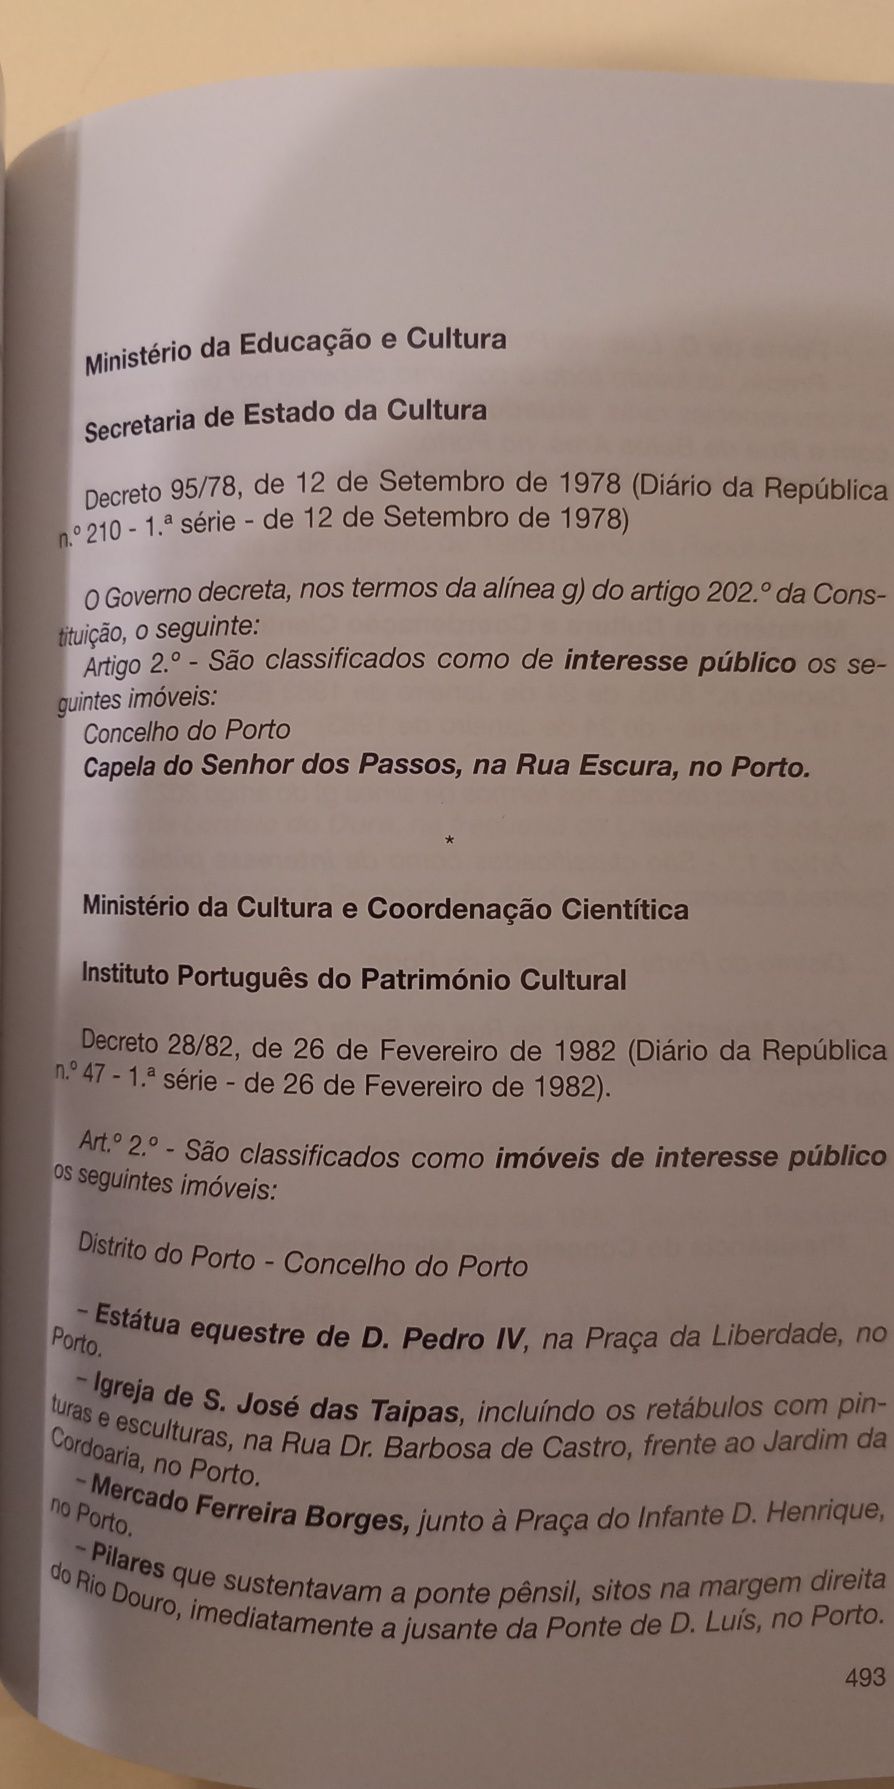 Livro sobre a cidade do Porto, monumentos e tradições. PORTES GRÁTIS.